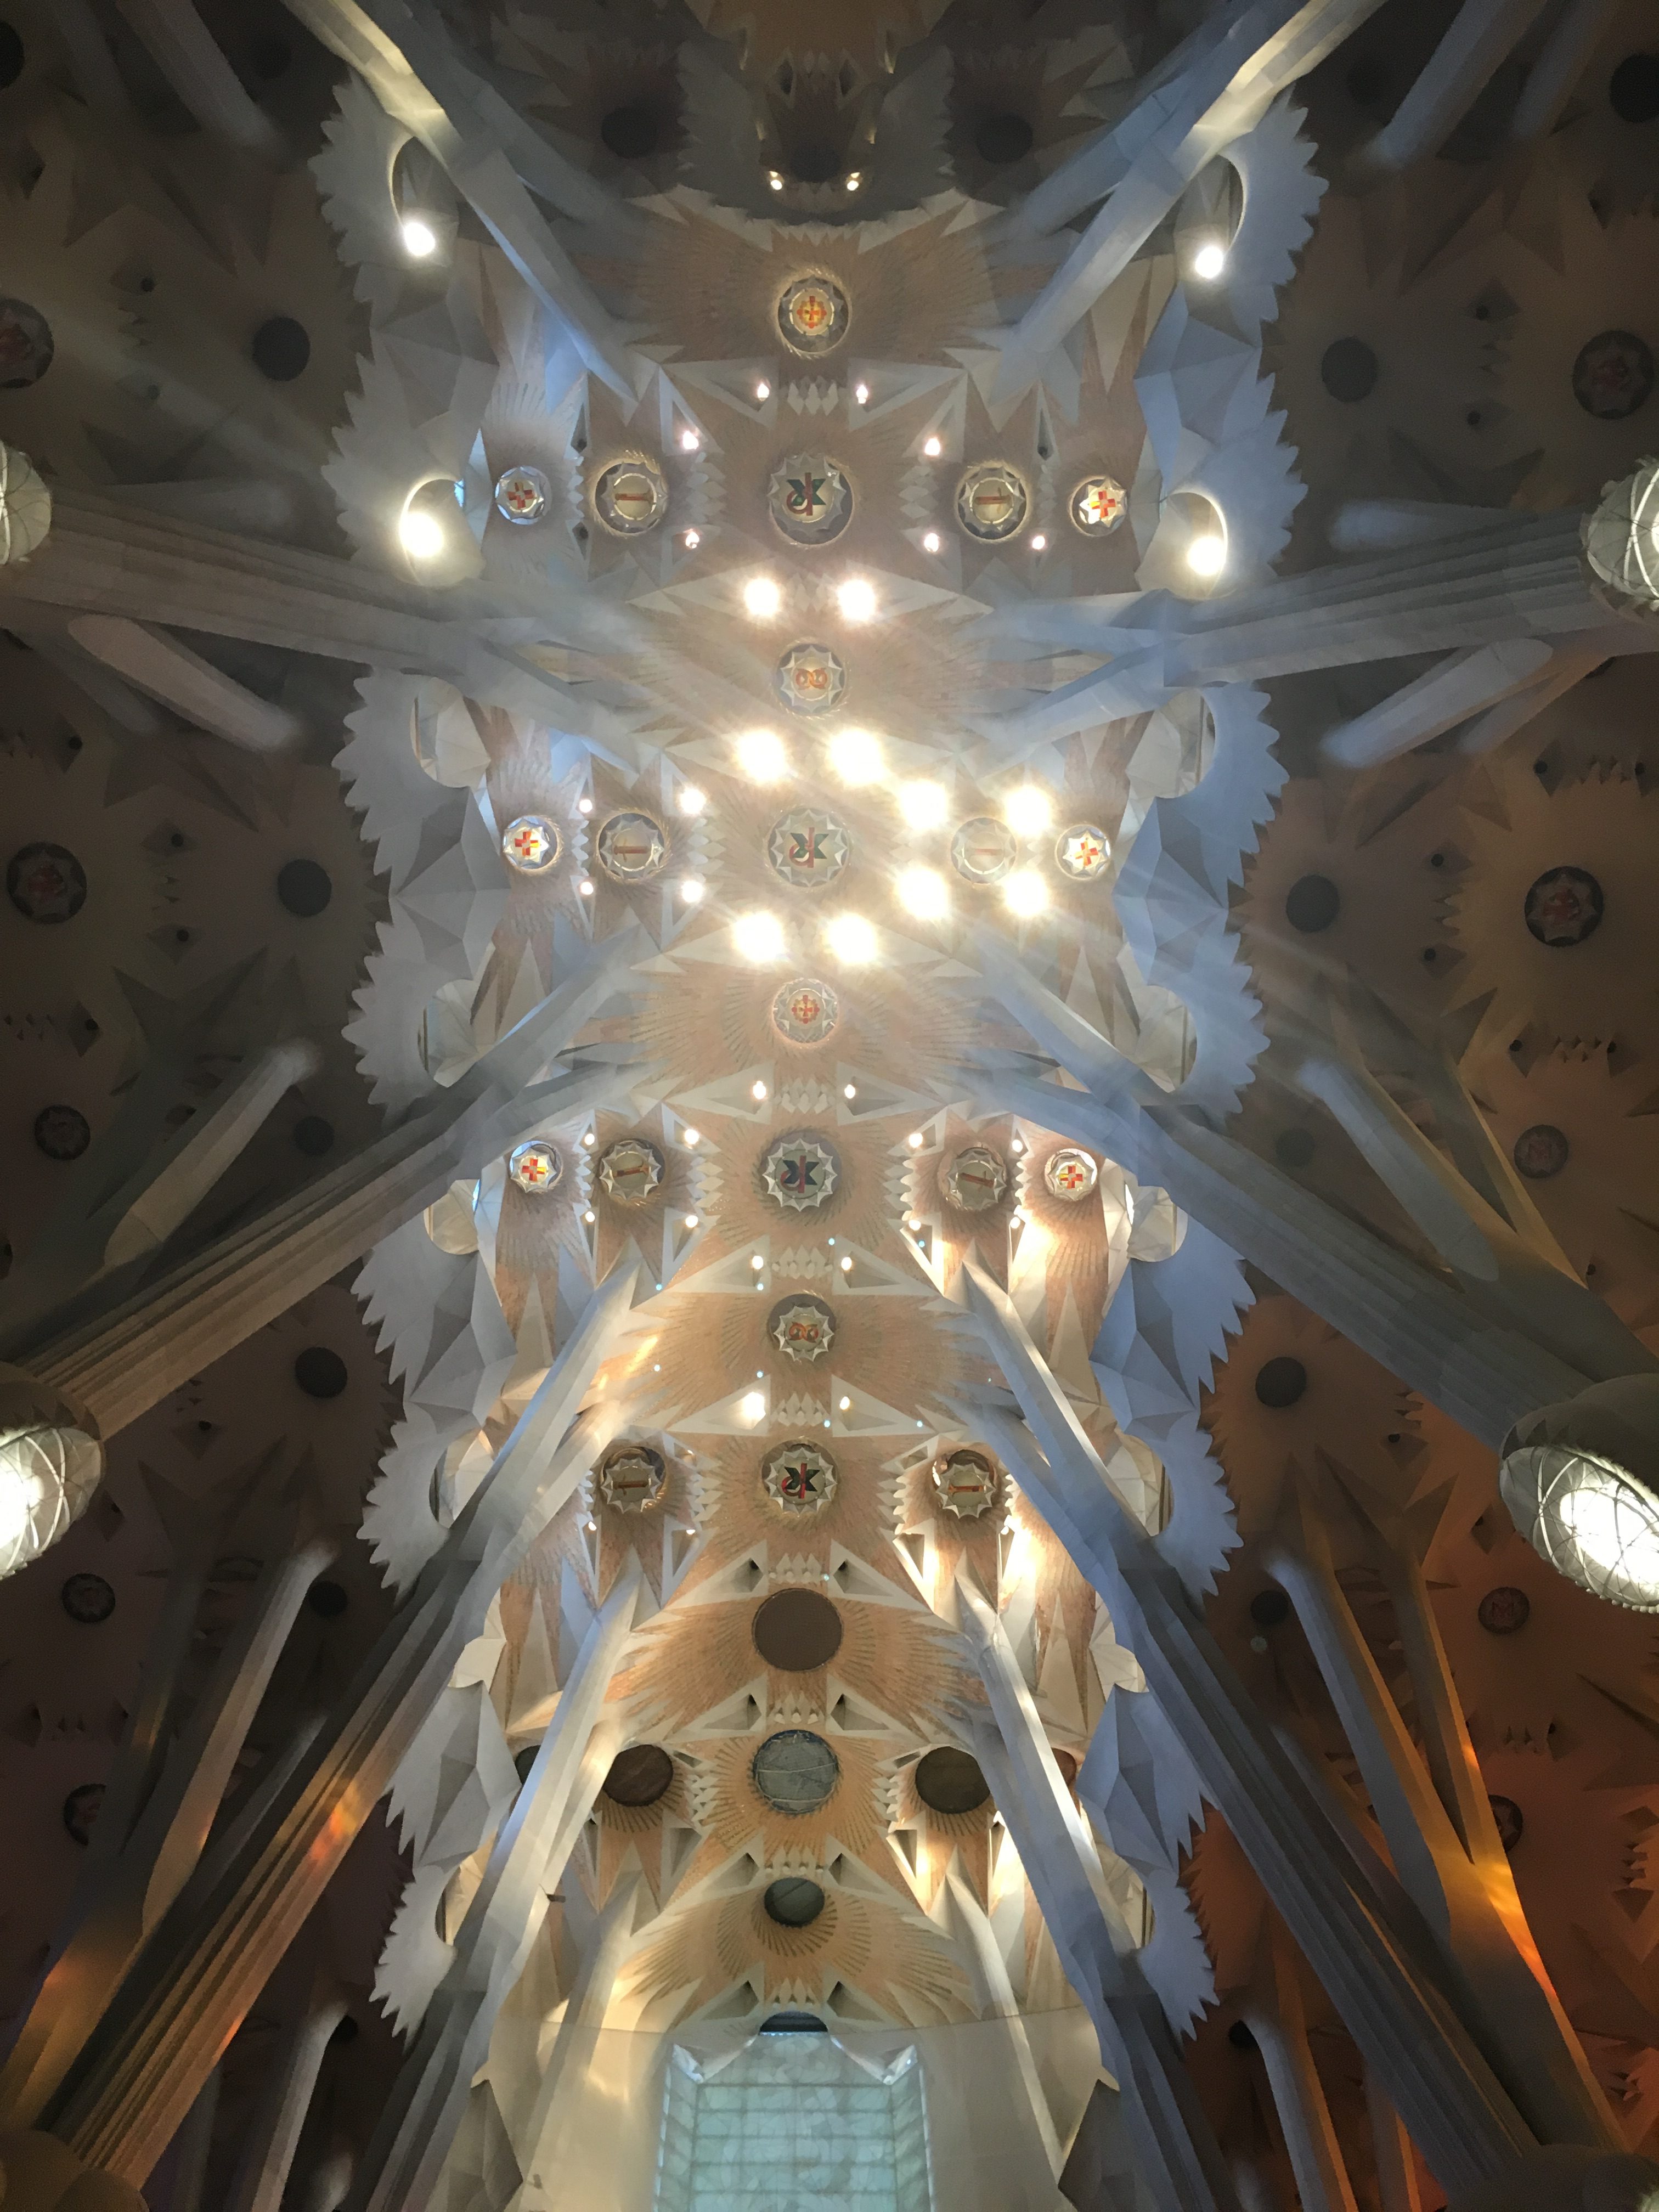 The ceiling of the magnificent La Sagrada Familia Barcelona